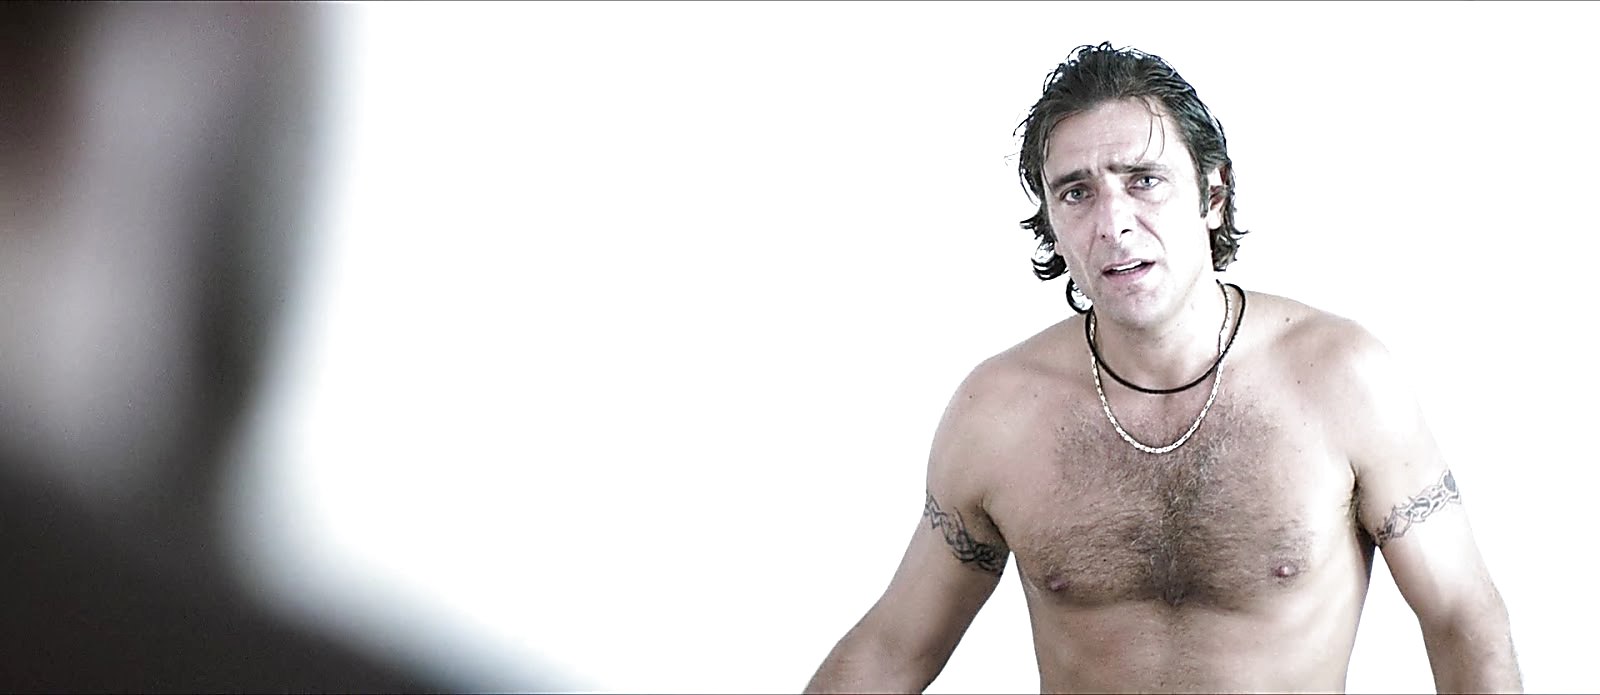 Adriano Giannini sexy shirtless scene December 1, 2017, 1pm